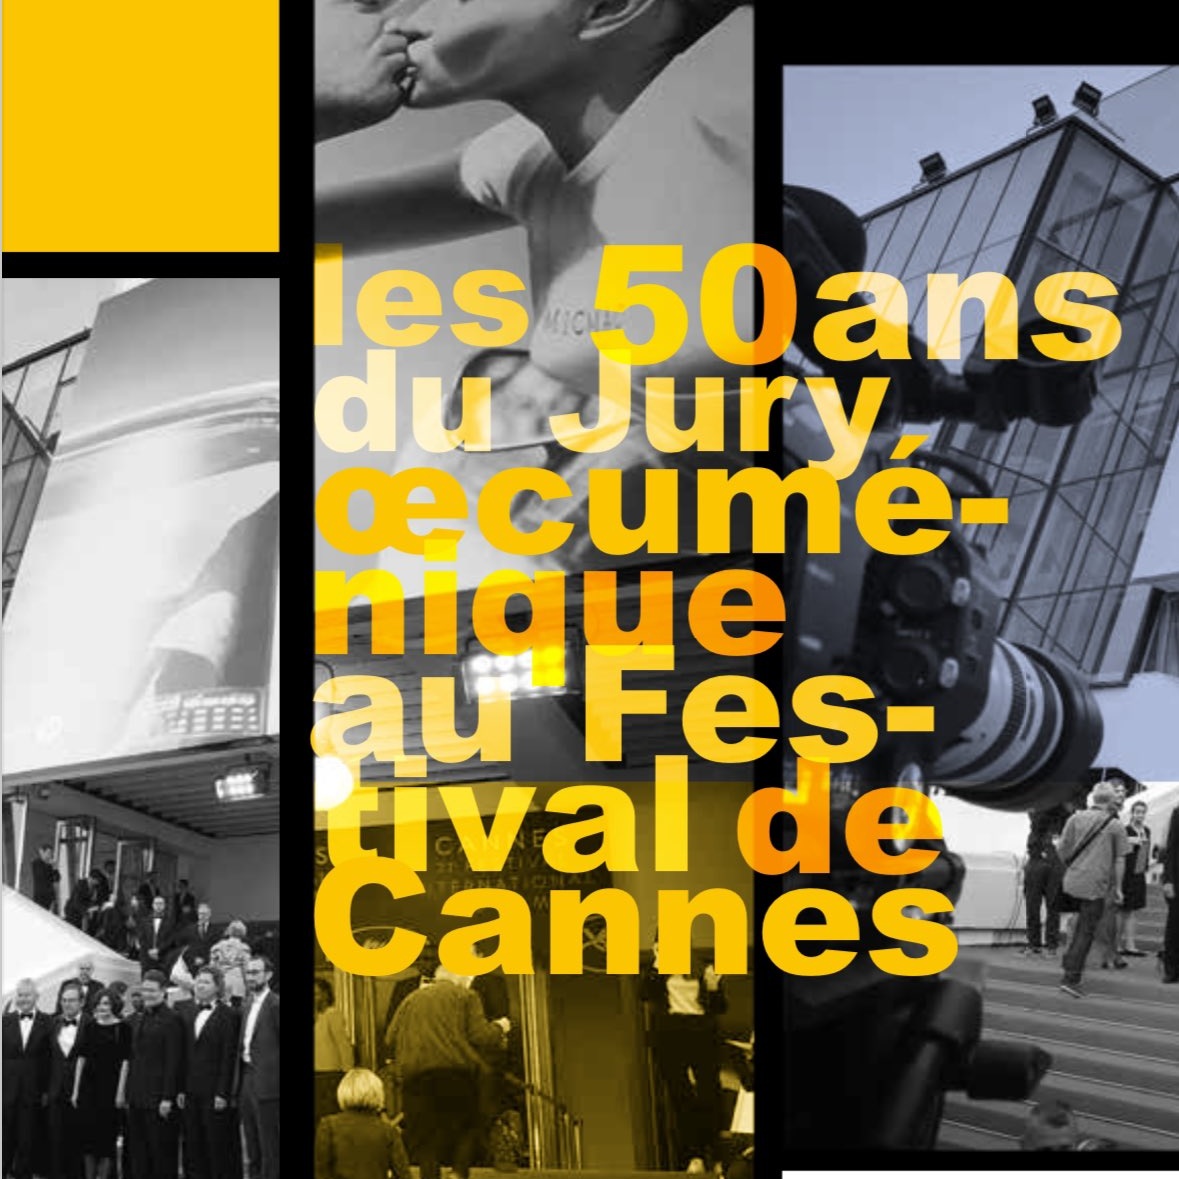 Les membres du @JuryOecu à #Cannes sont nommés. Nous leur souhaitons bon travail en cette année qui marque les 50 ans du #JuryOecumenique Ce travail entre @SIGNIS @waccglobal @InterFilmFrance est un témoignage oecuménique dans le monde de la culture. mailchi.mp/7d2f466c0bf8/i…